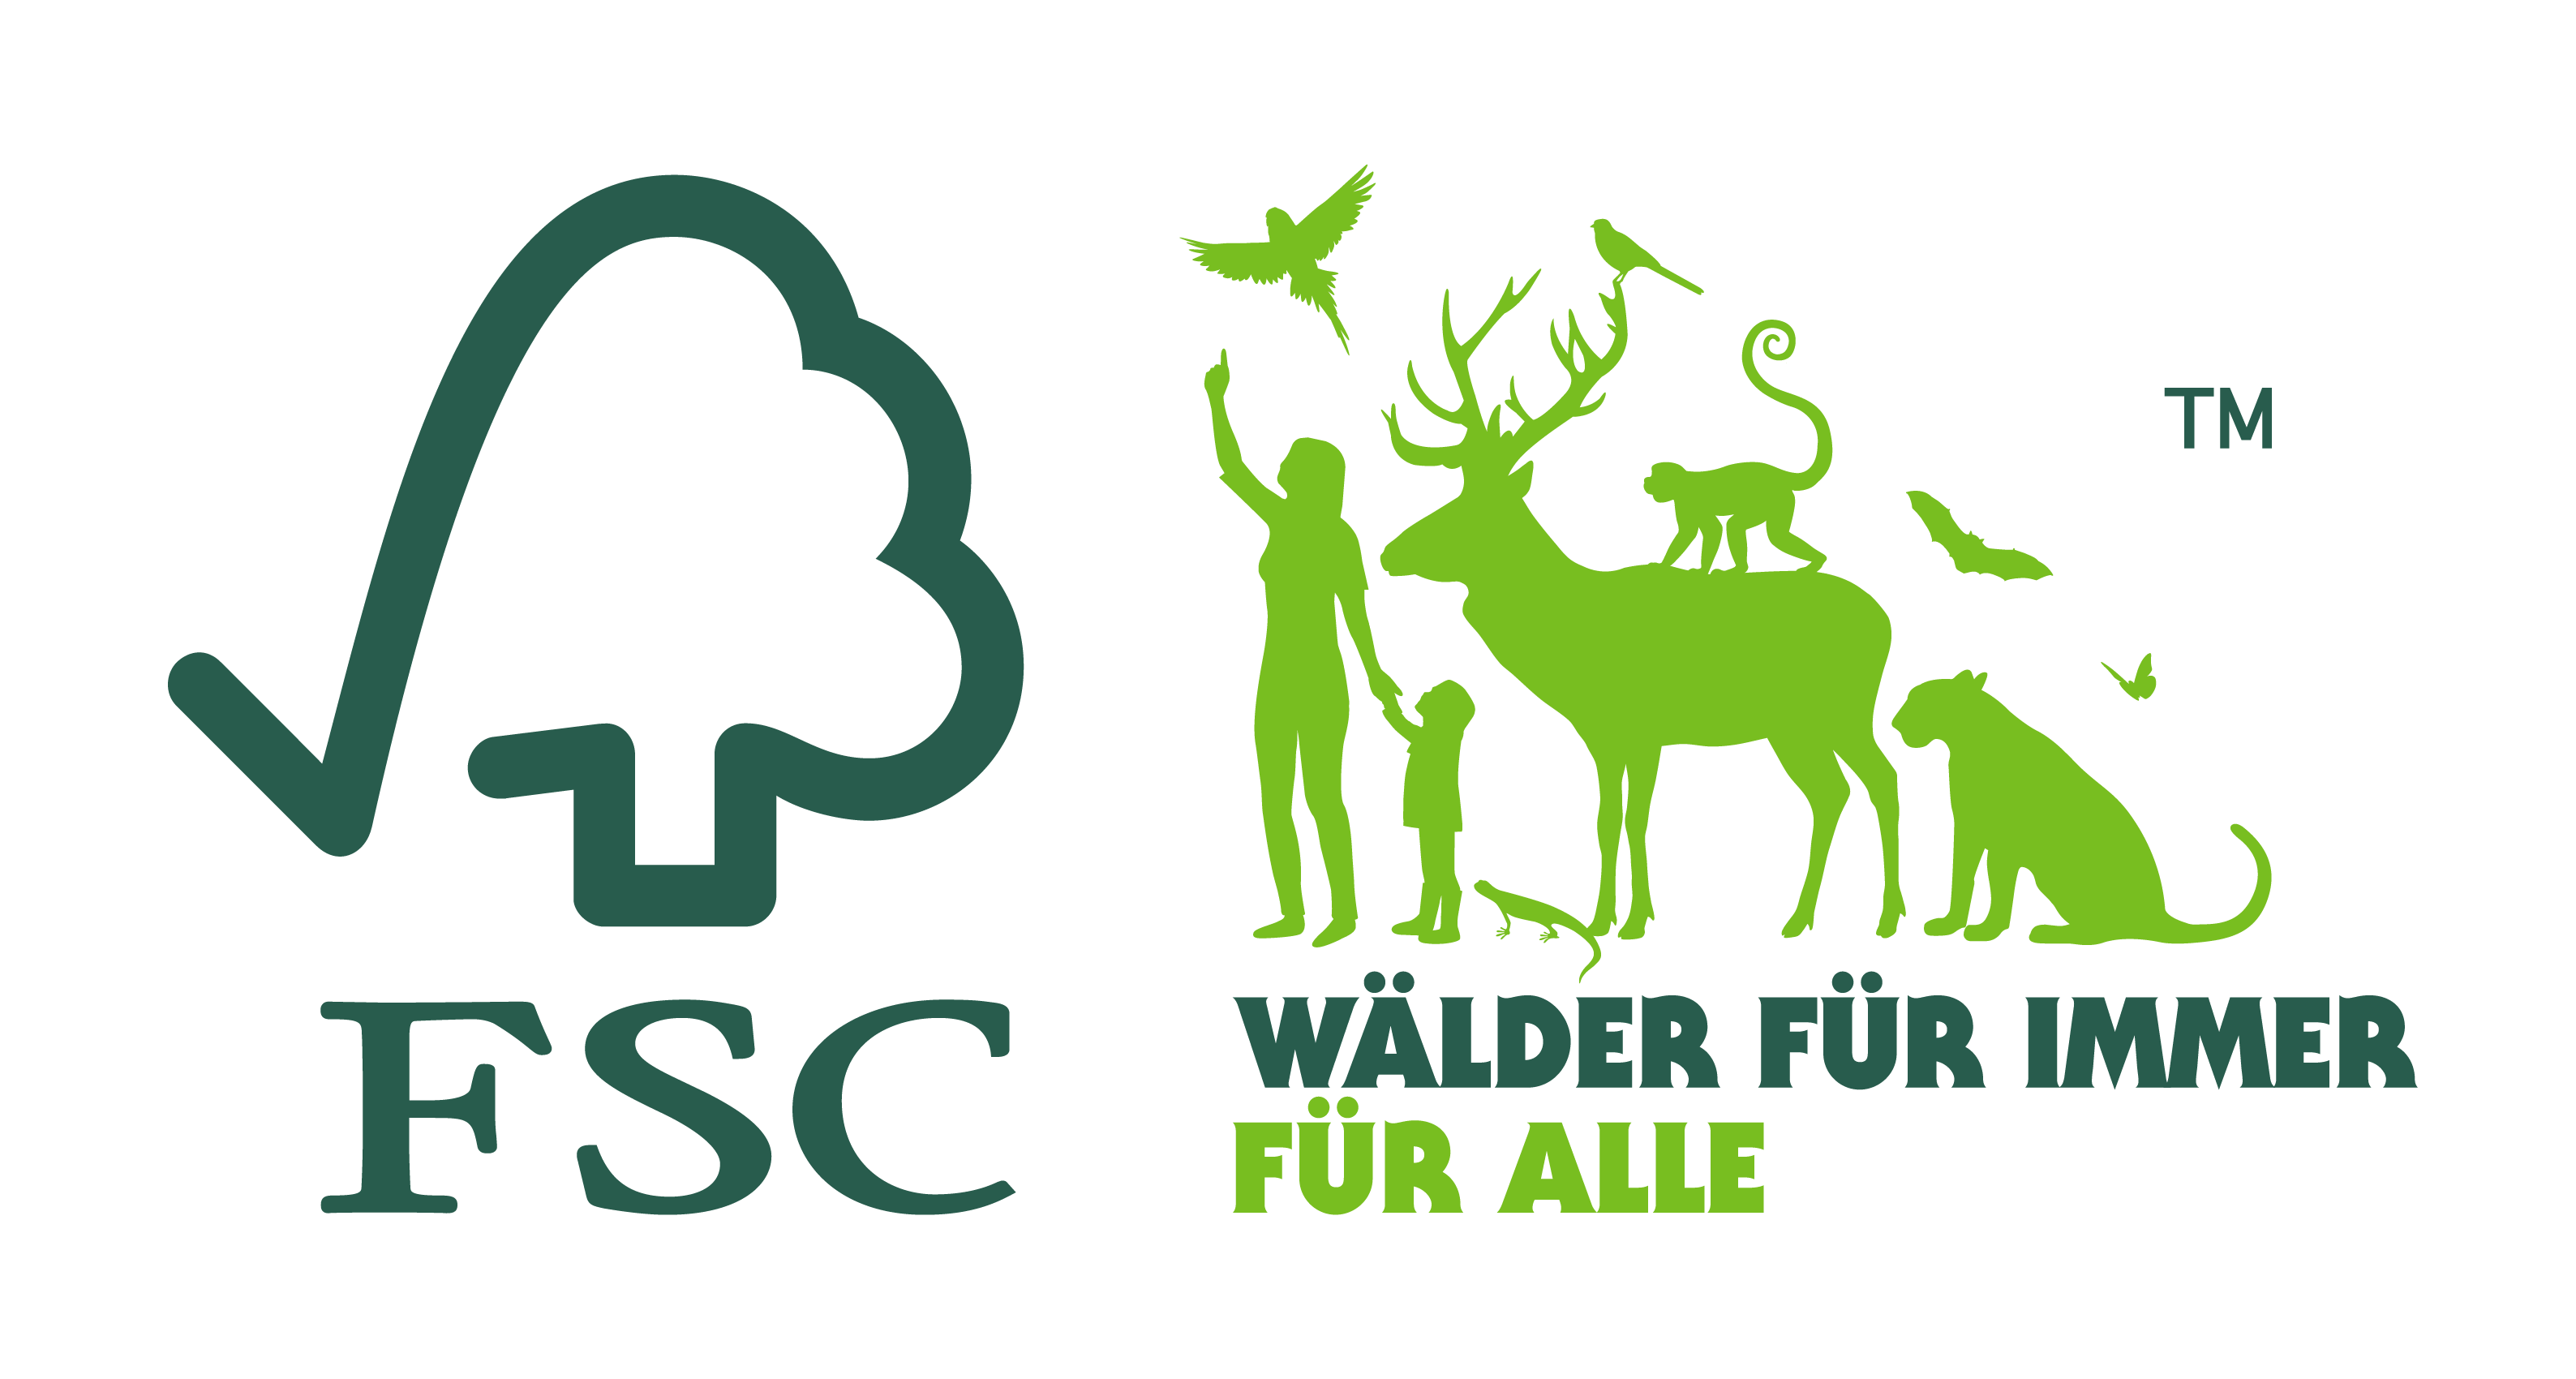 FSC® – Wälder für immer für alle